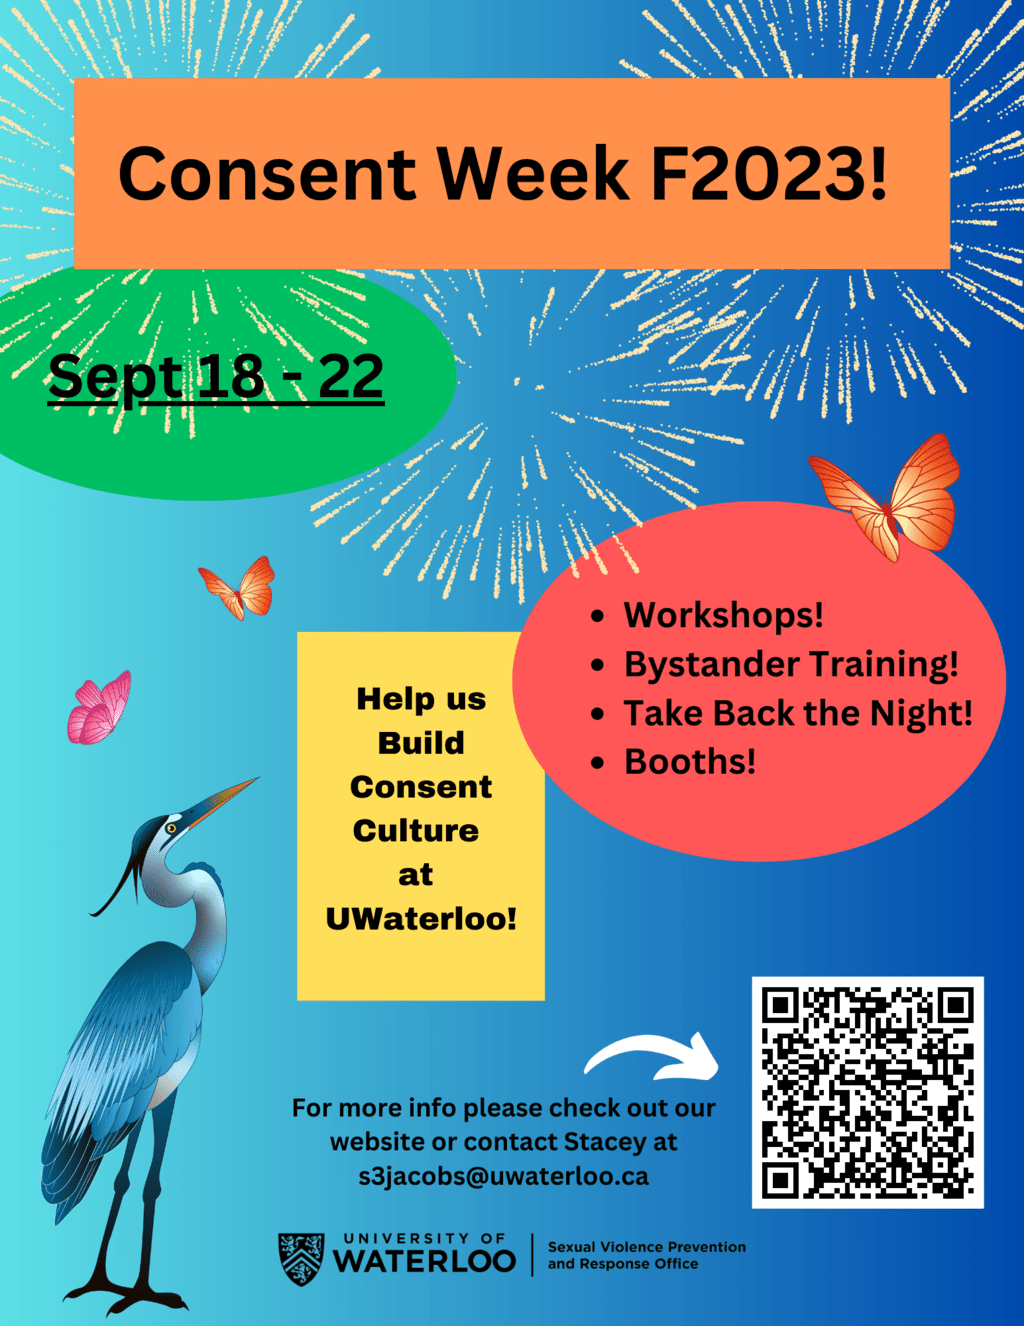 Consent Week F2023 - Sept 18 - 22